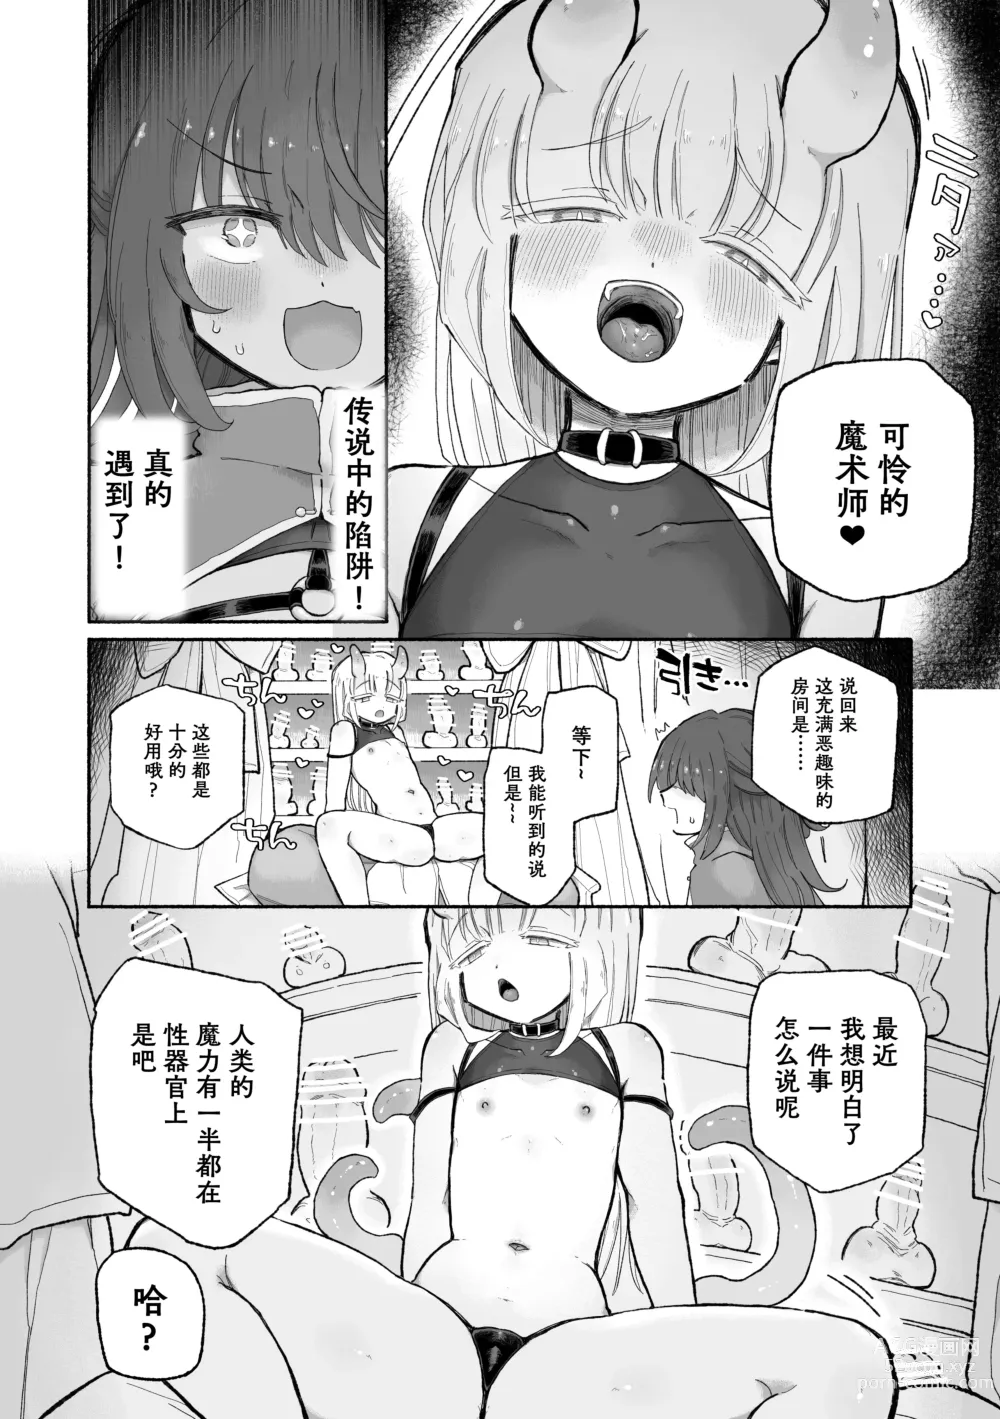 Page 7 of doujinshi Do hamari chui no kyosei danjon! 〜Mugen shasei no kairaku jigoku e yokoso〜